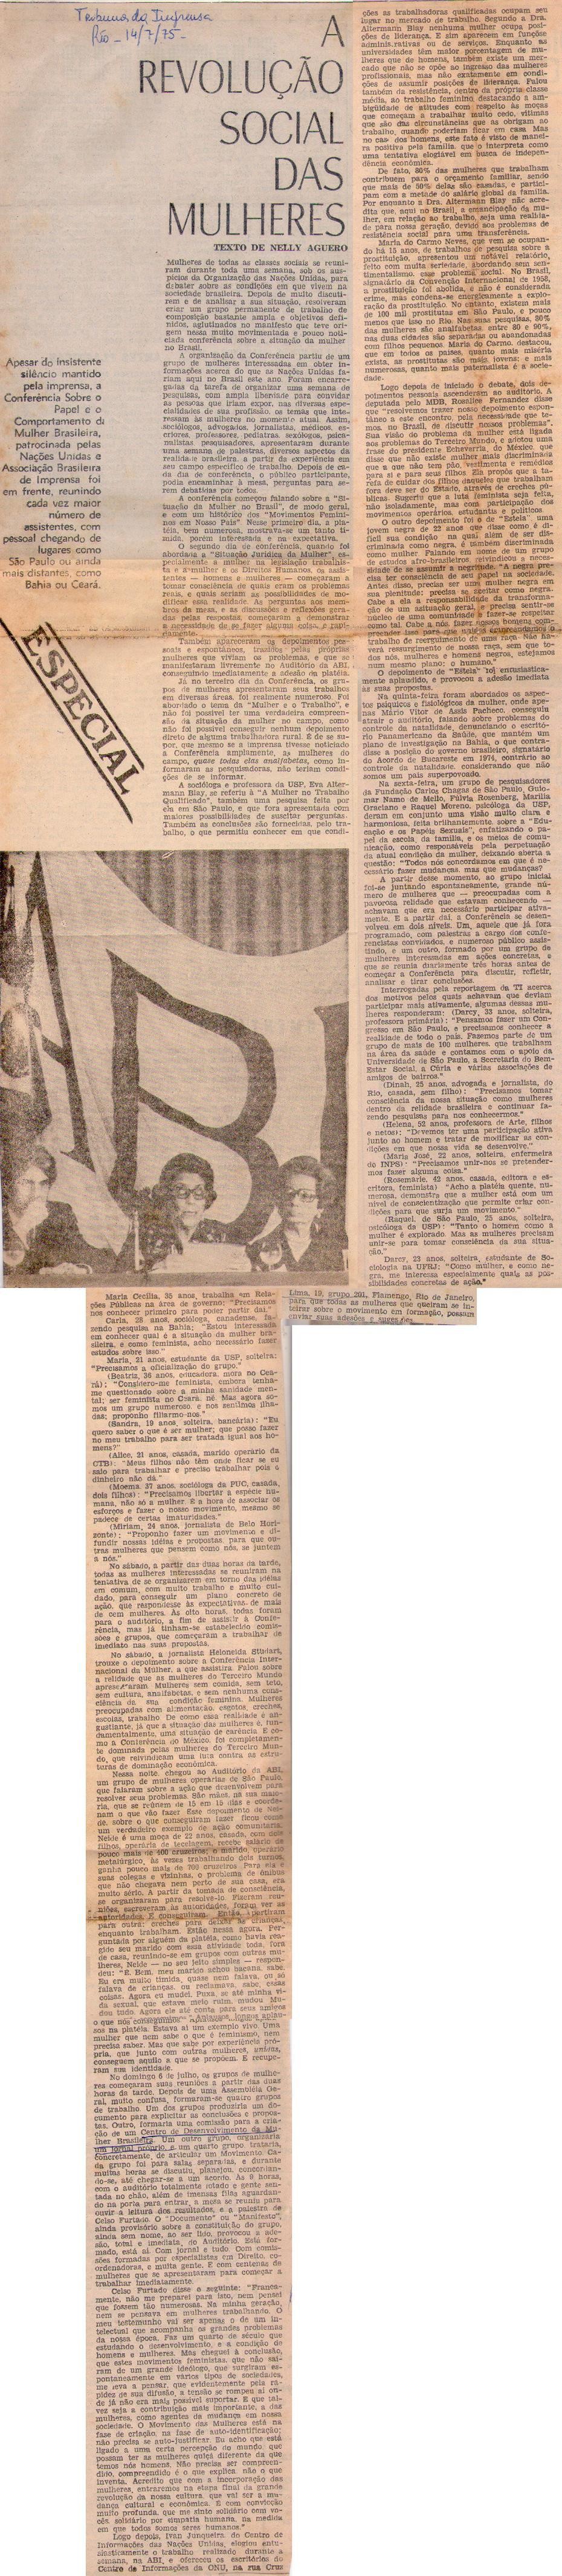 14 de Julho de 1975 - Tribuna da Imprensa. A revolução social das mulheres.